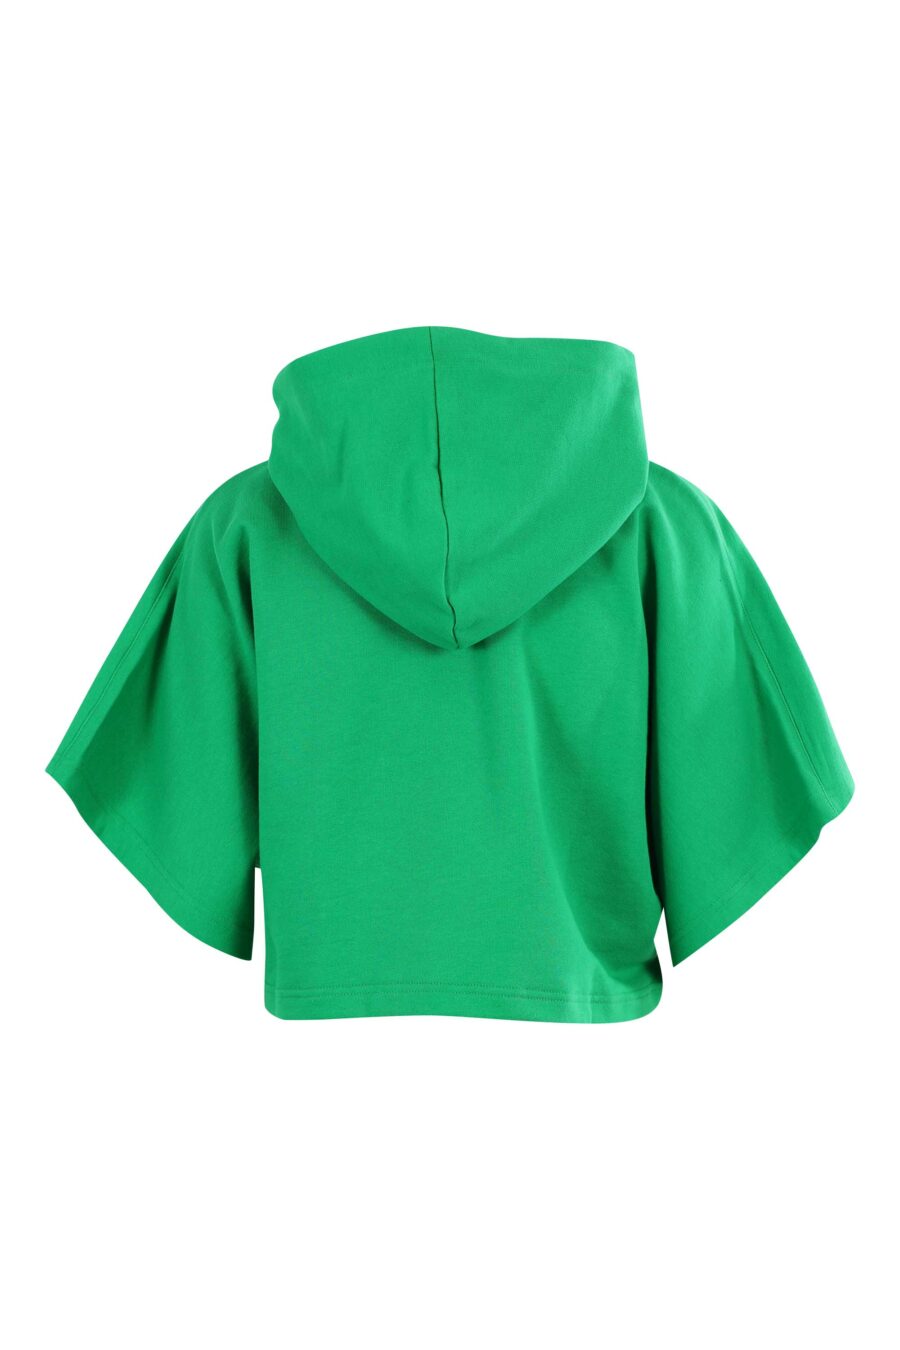 Sudadera manga corta verde con capucha y logo ojo y estrella - 8052672417961 2